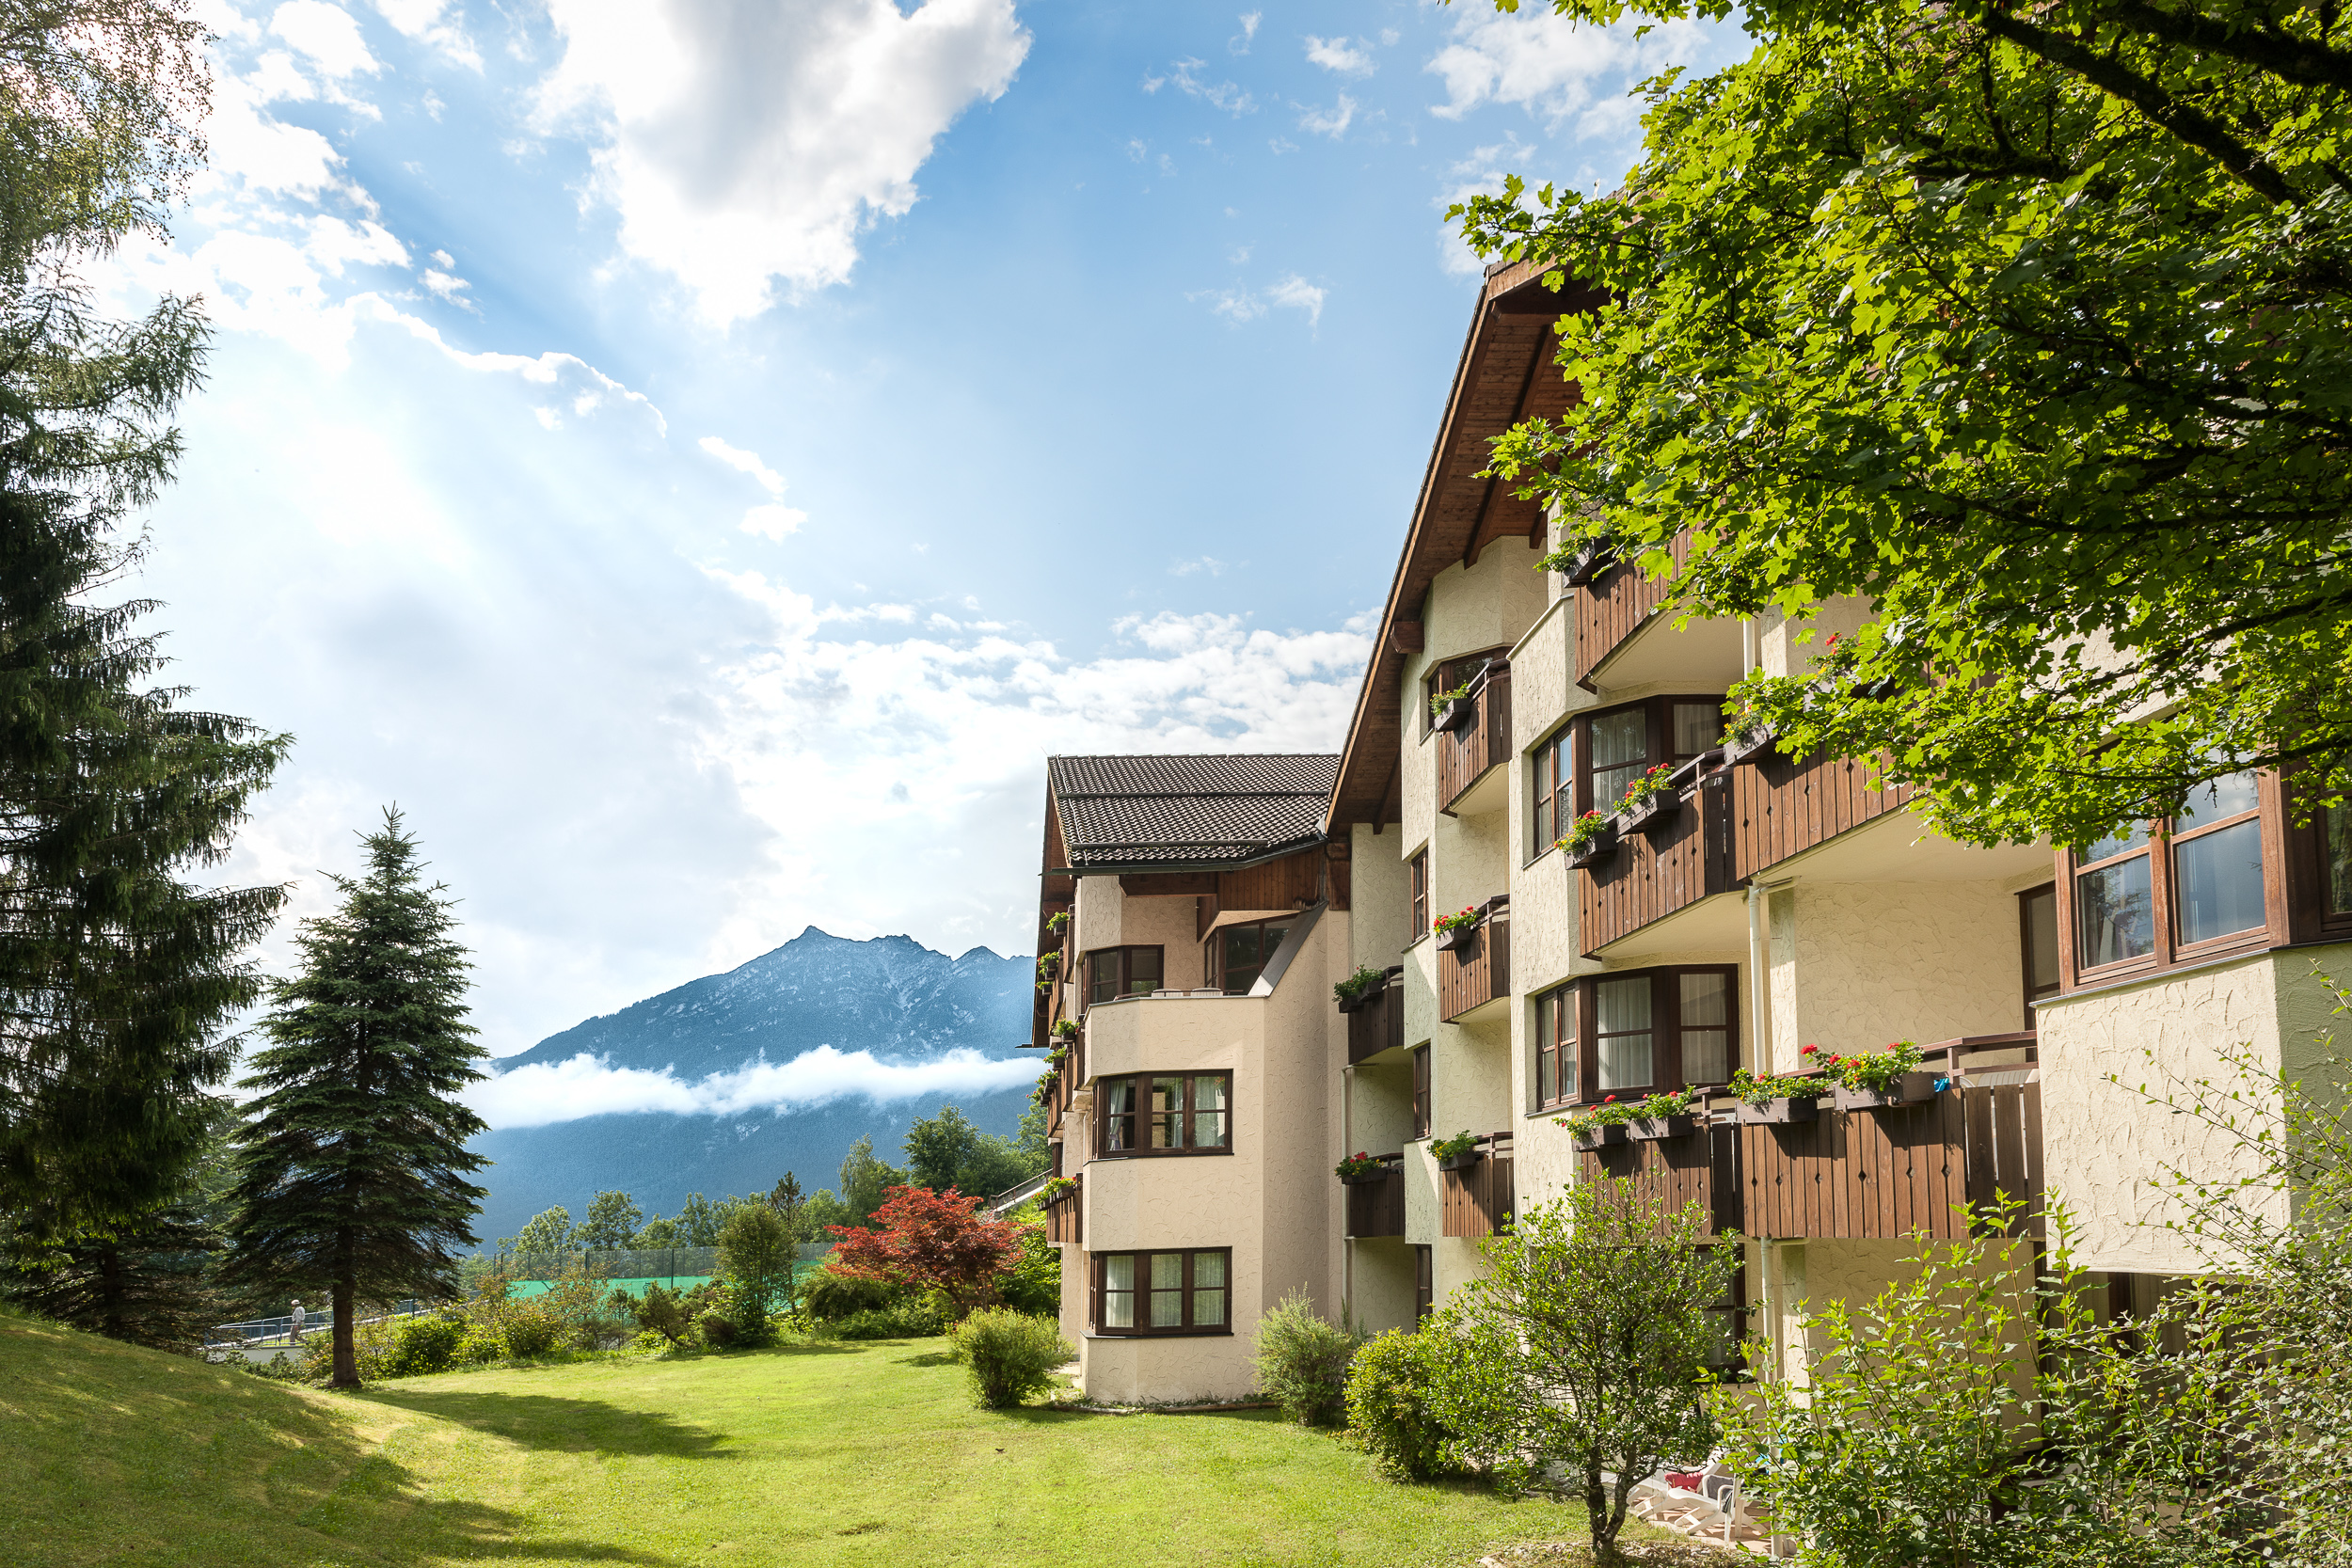  Seminarhotel Dorint Hotel Garmisch